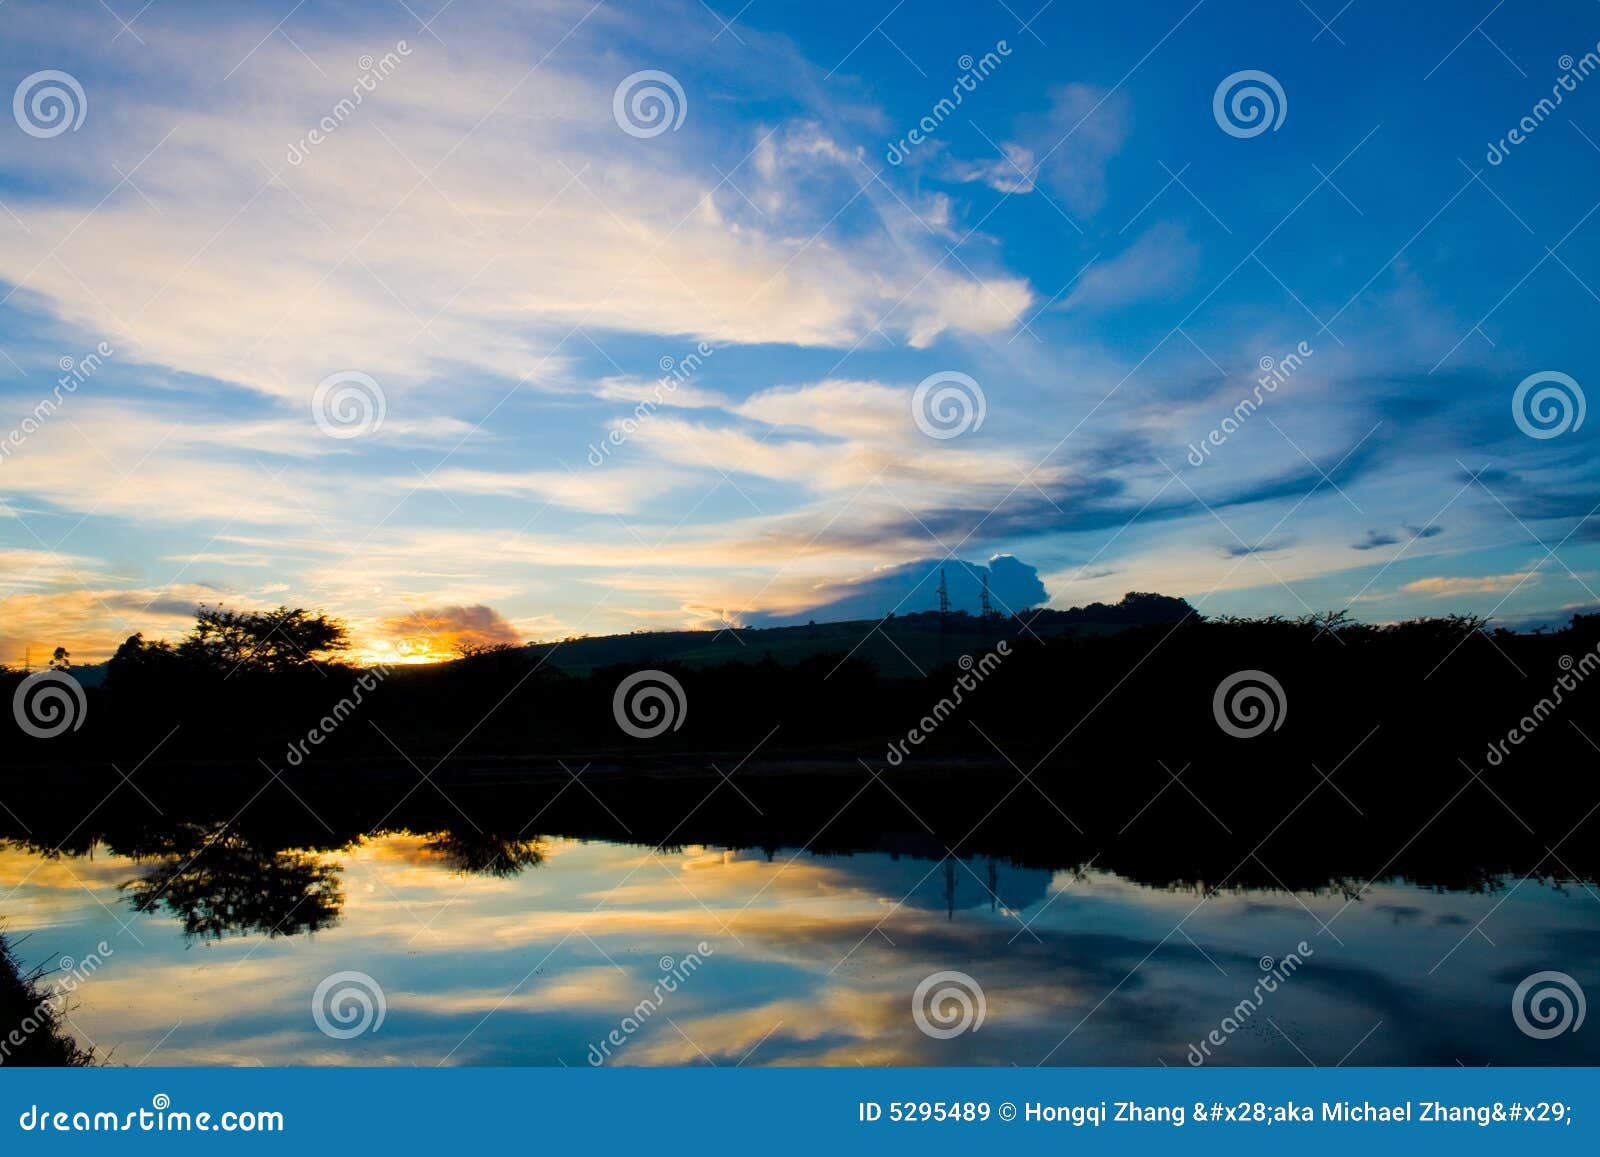 Le nubi variopinte riflettono sulla superficie dell'acqua del lago all'alba.